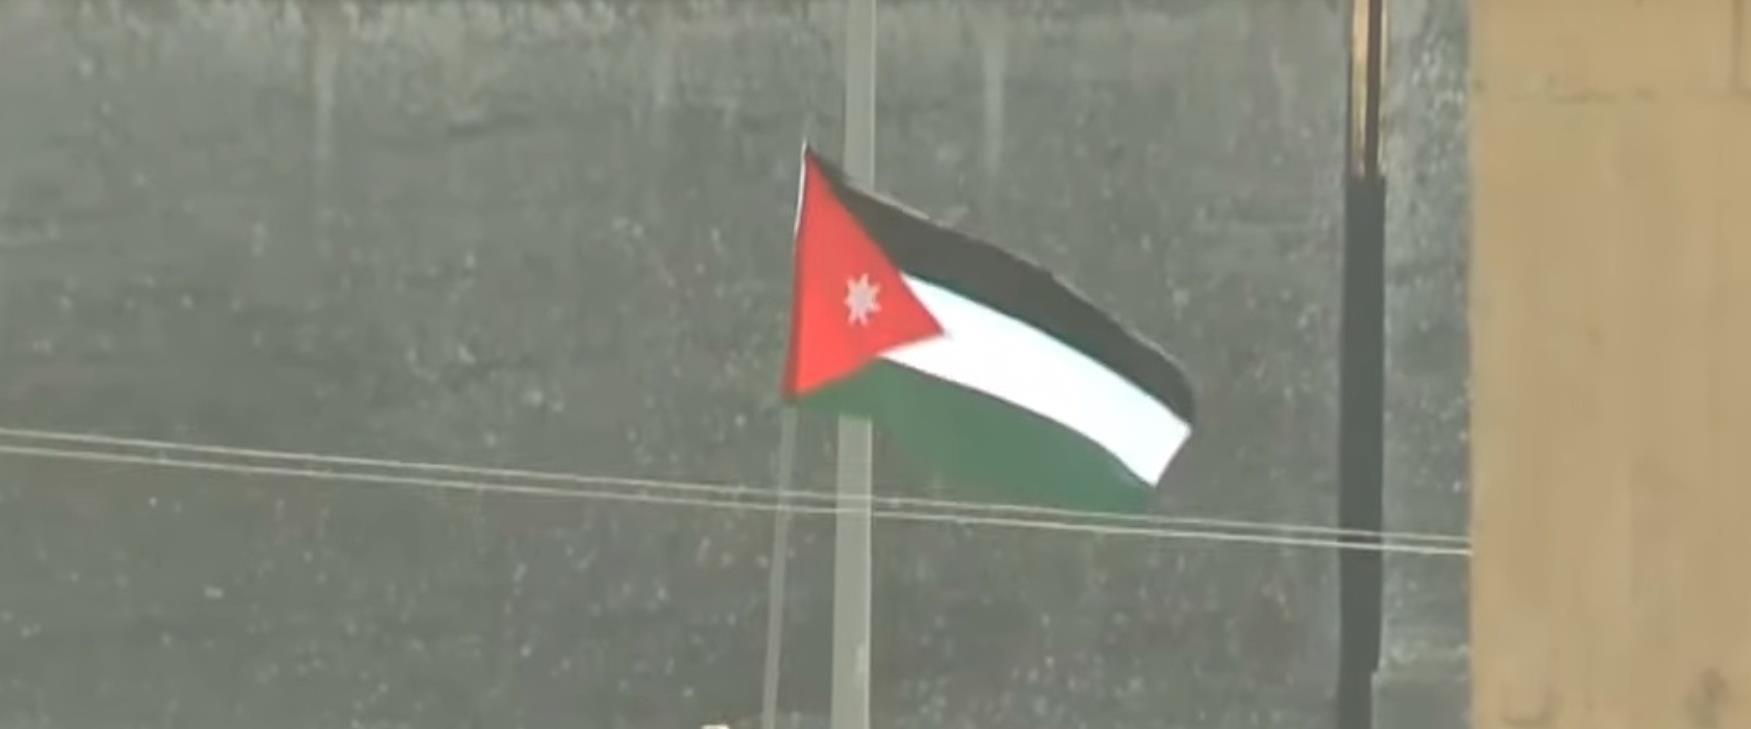 דגל ירדן באי השלום